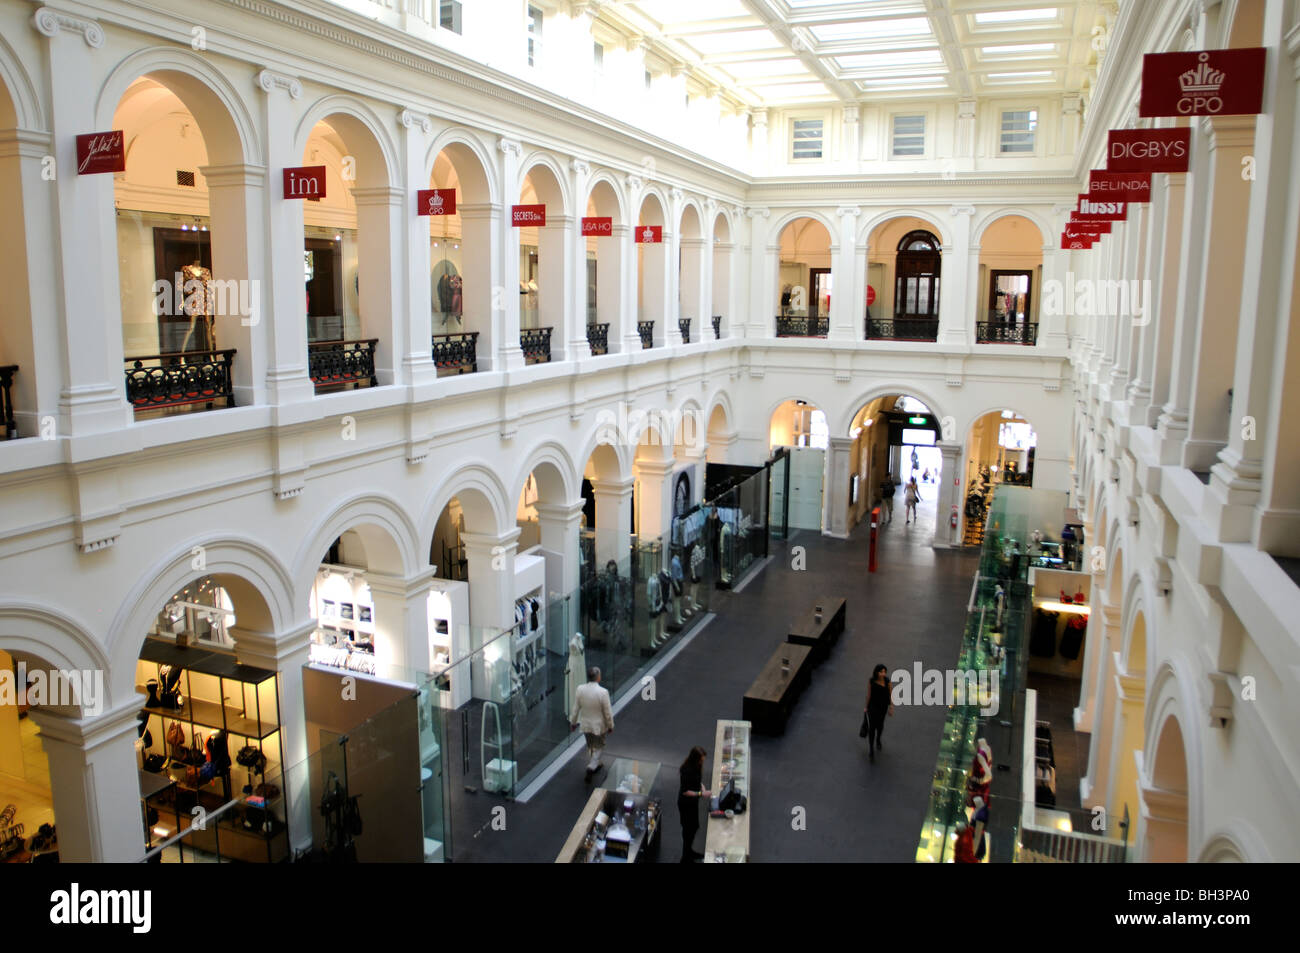 Coin intérieur gpo Bourke Street Mall et Elizabeth Street Melbourne Victoria Australia Banque D'Images